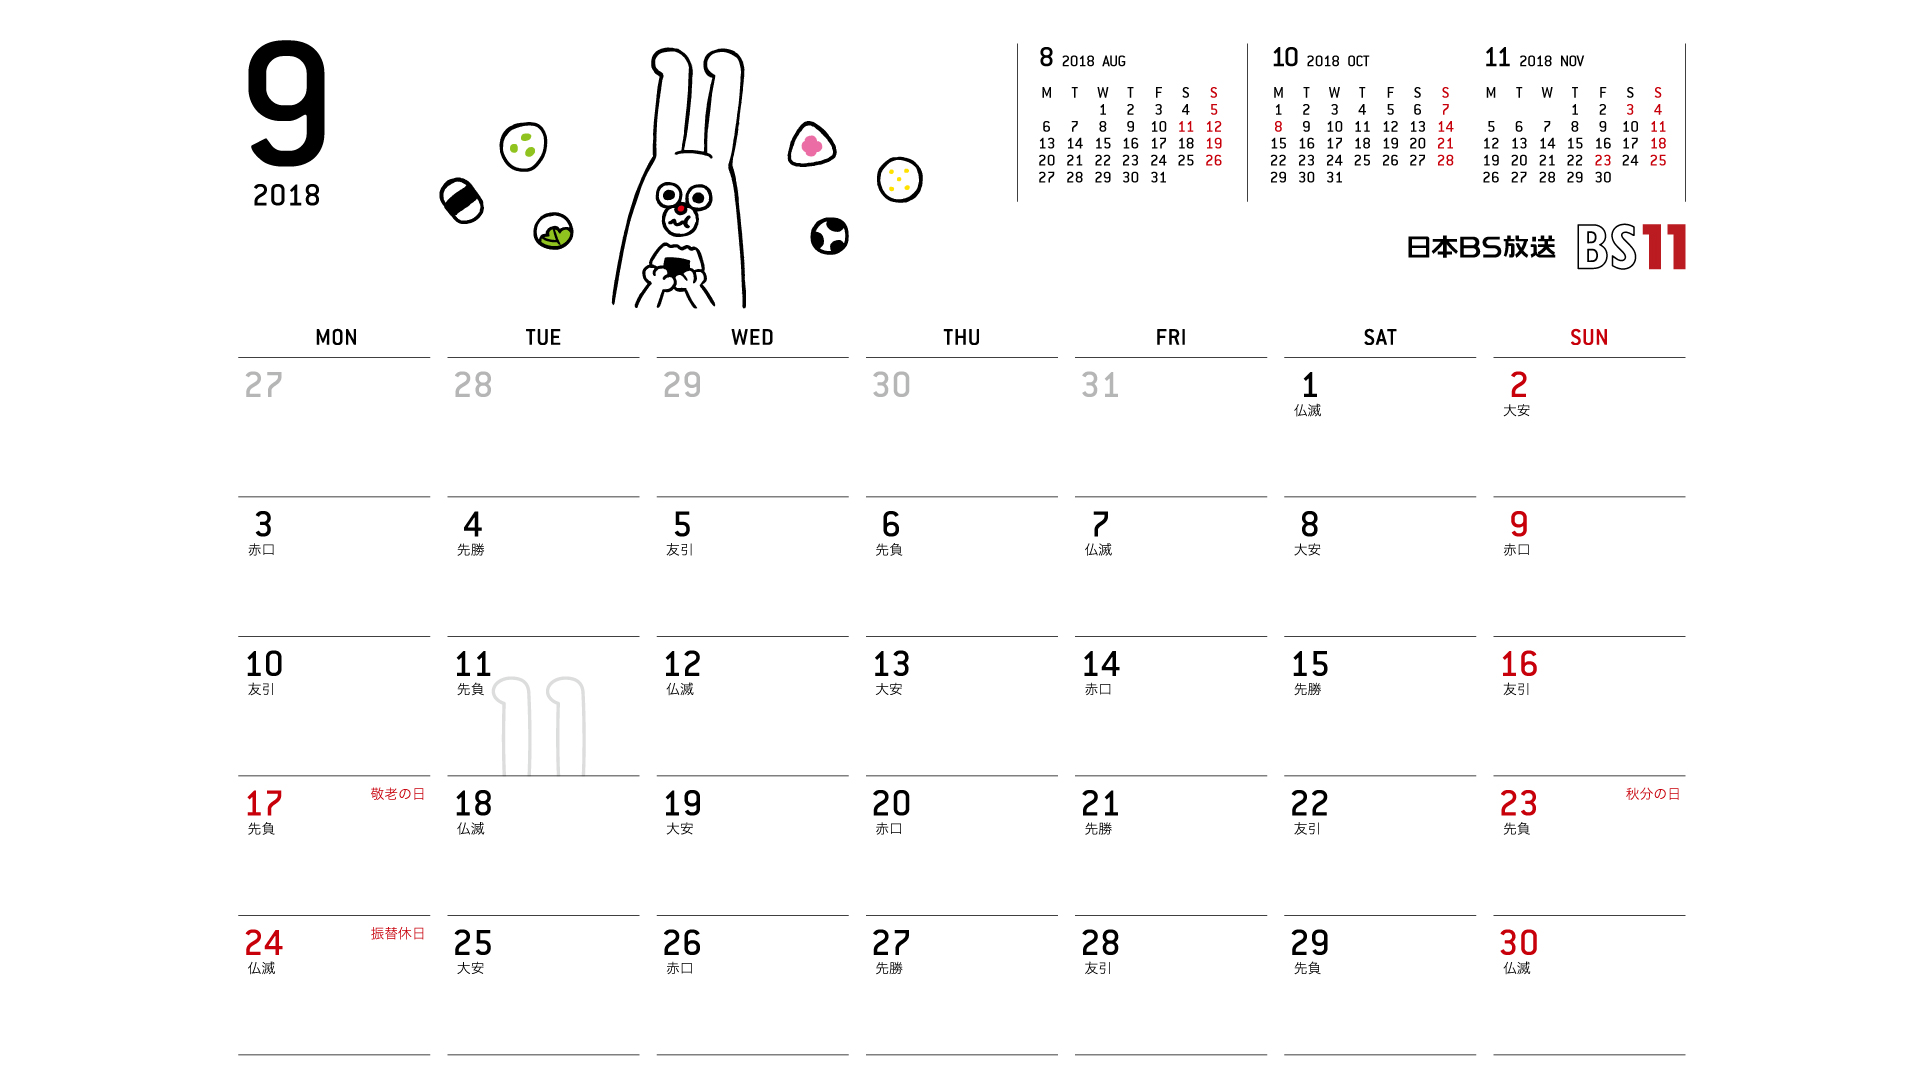 じゅういっちゃんのデジタルカレンダー18年09月 Bs11 イレブン いつでも無料放送